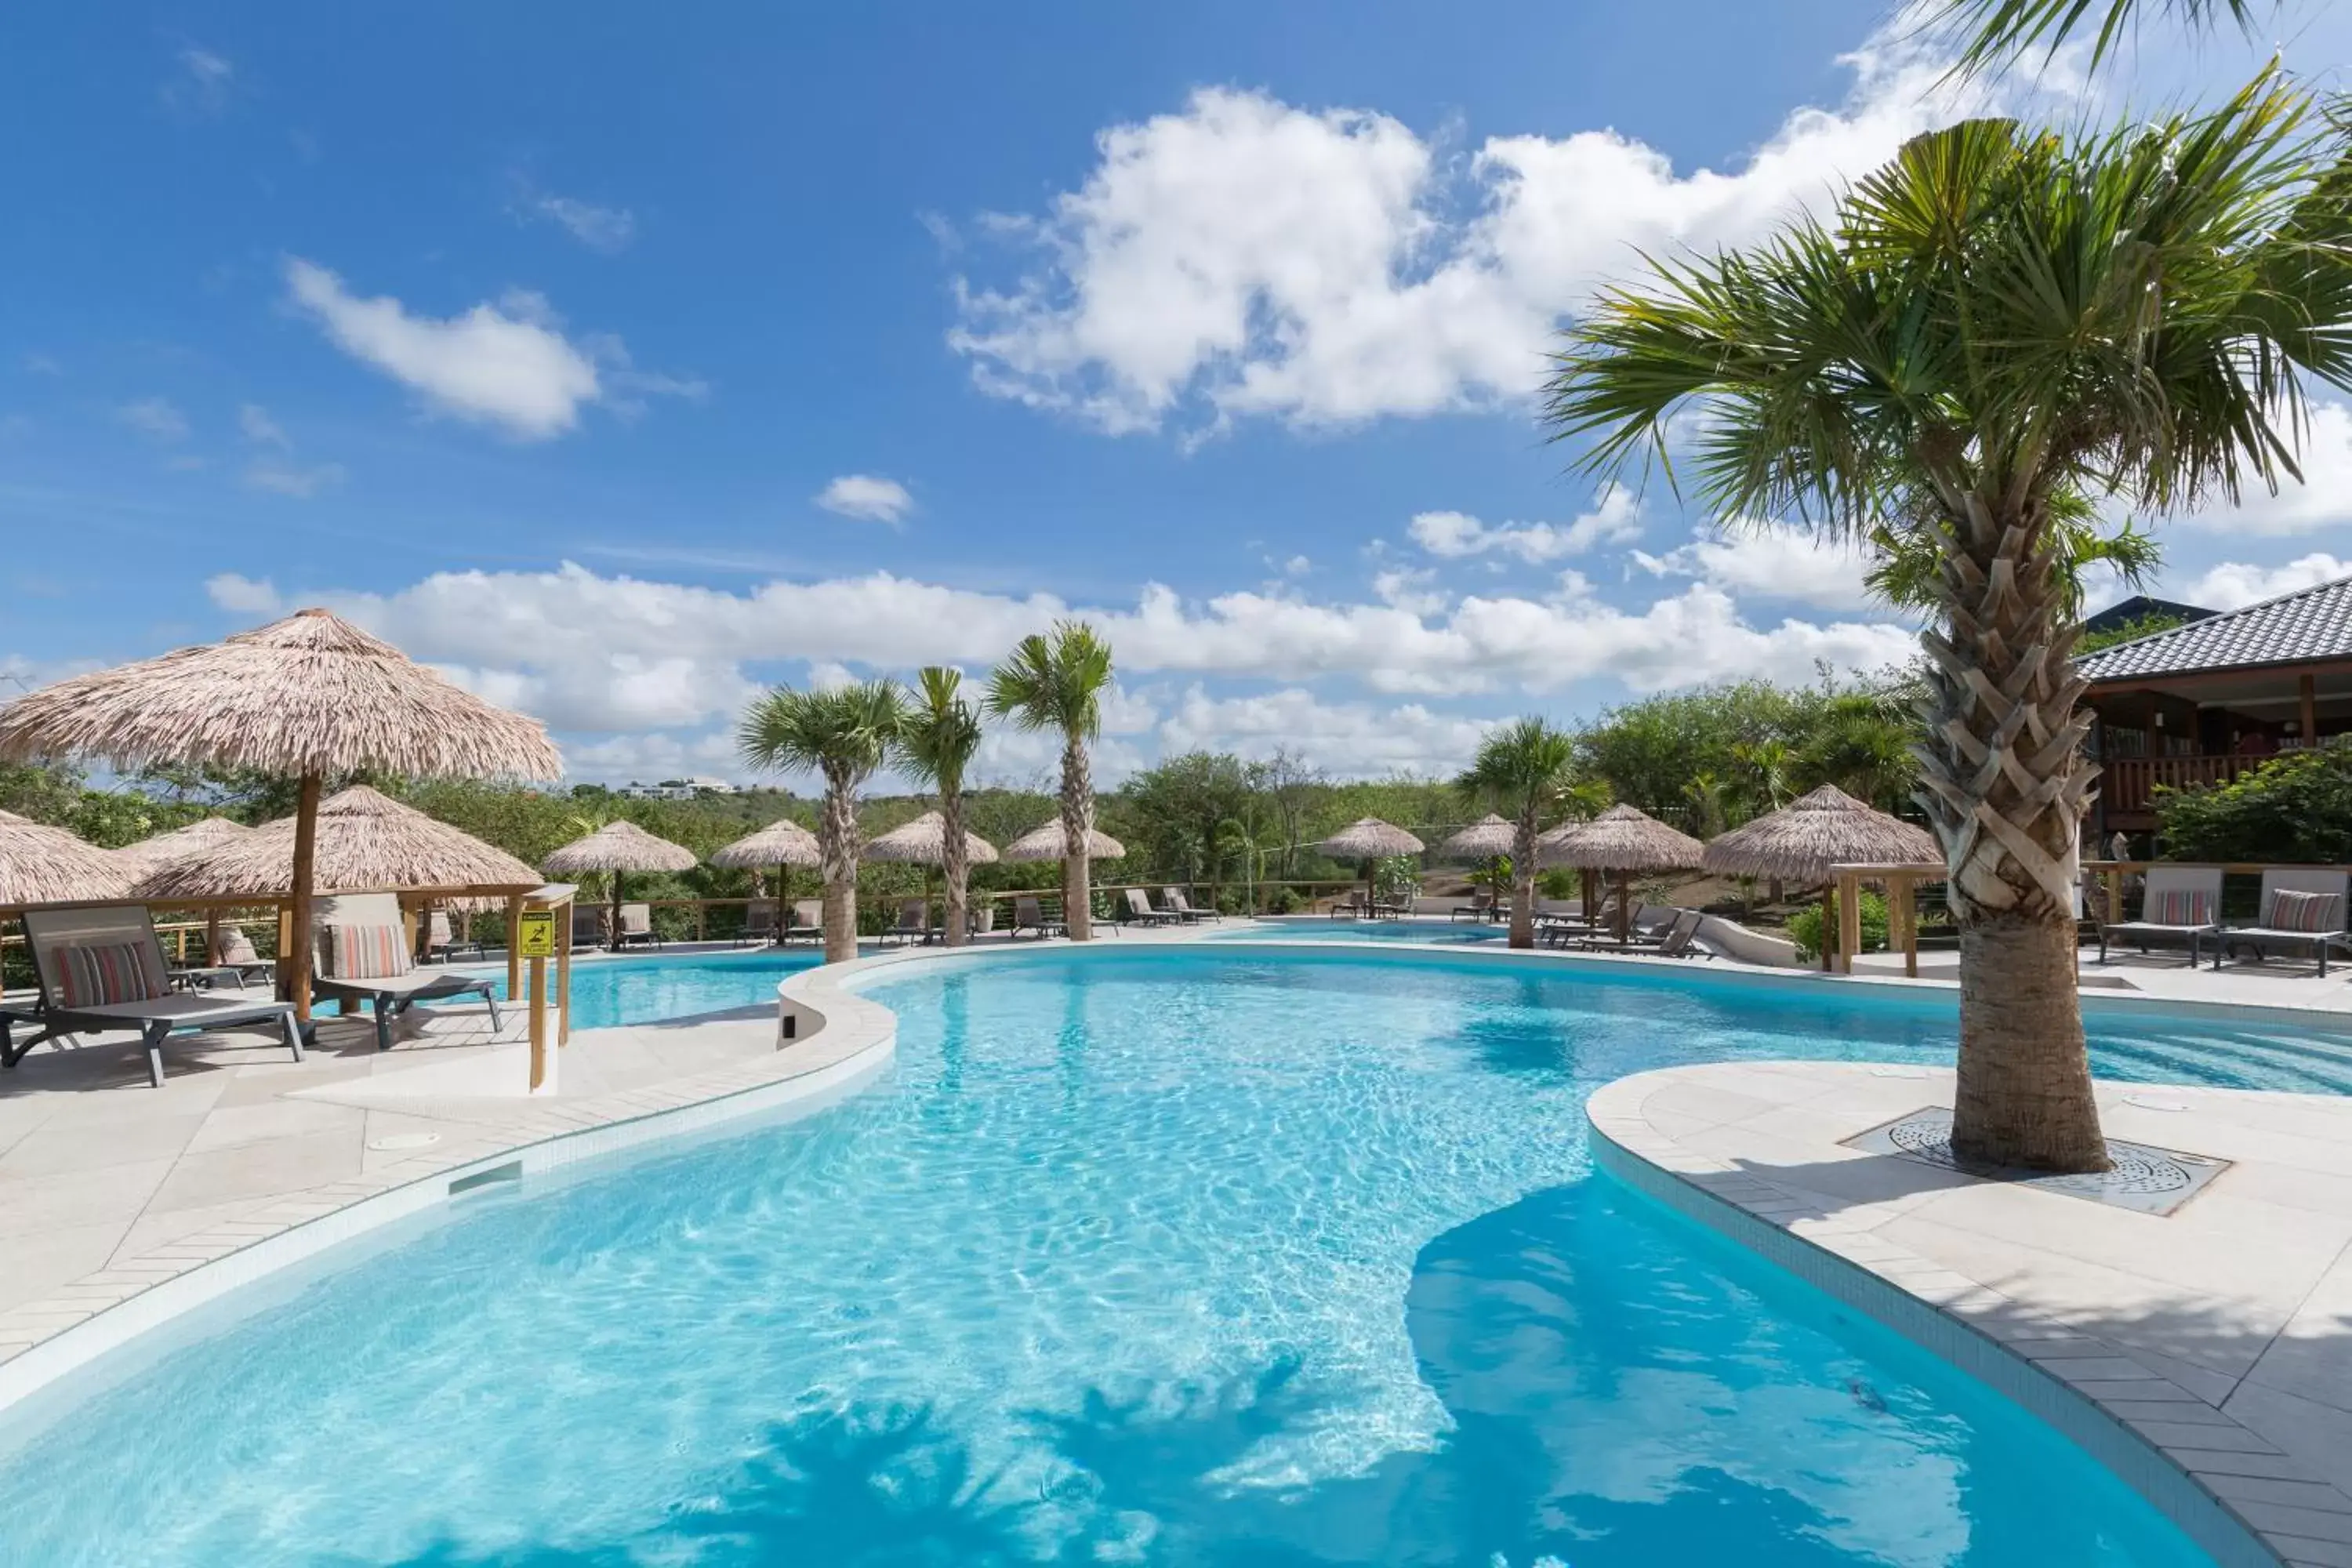 Swimming Pool in Morena Resort